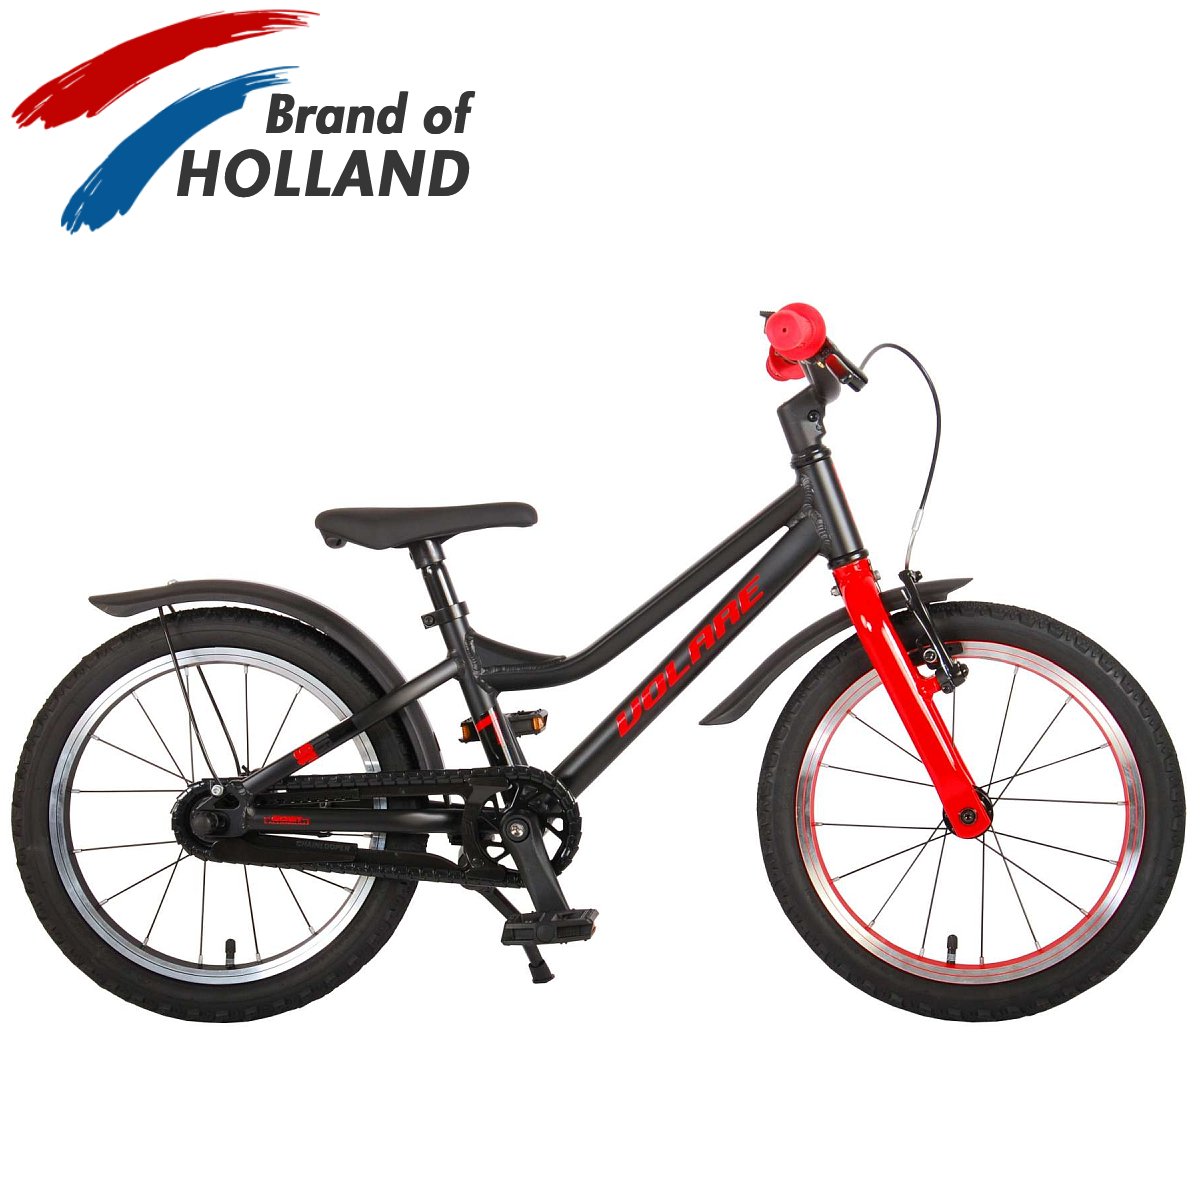 Vaikiškas dviratis VOLARE 16" Blaster (21670) juodas/raudonas